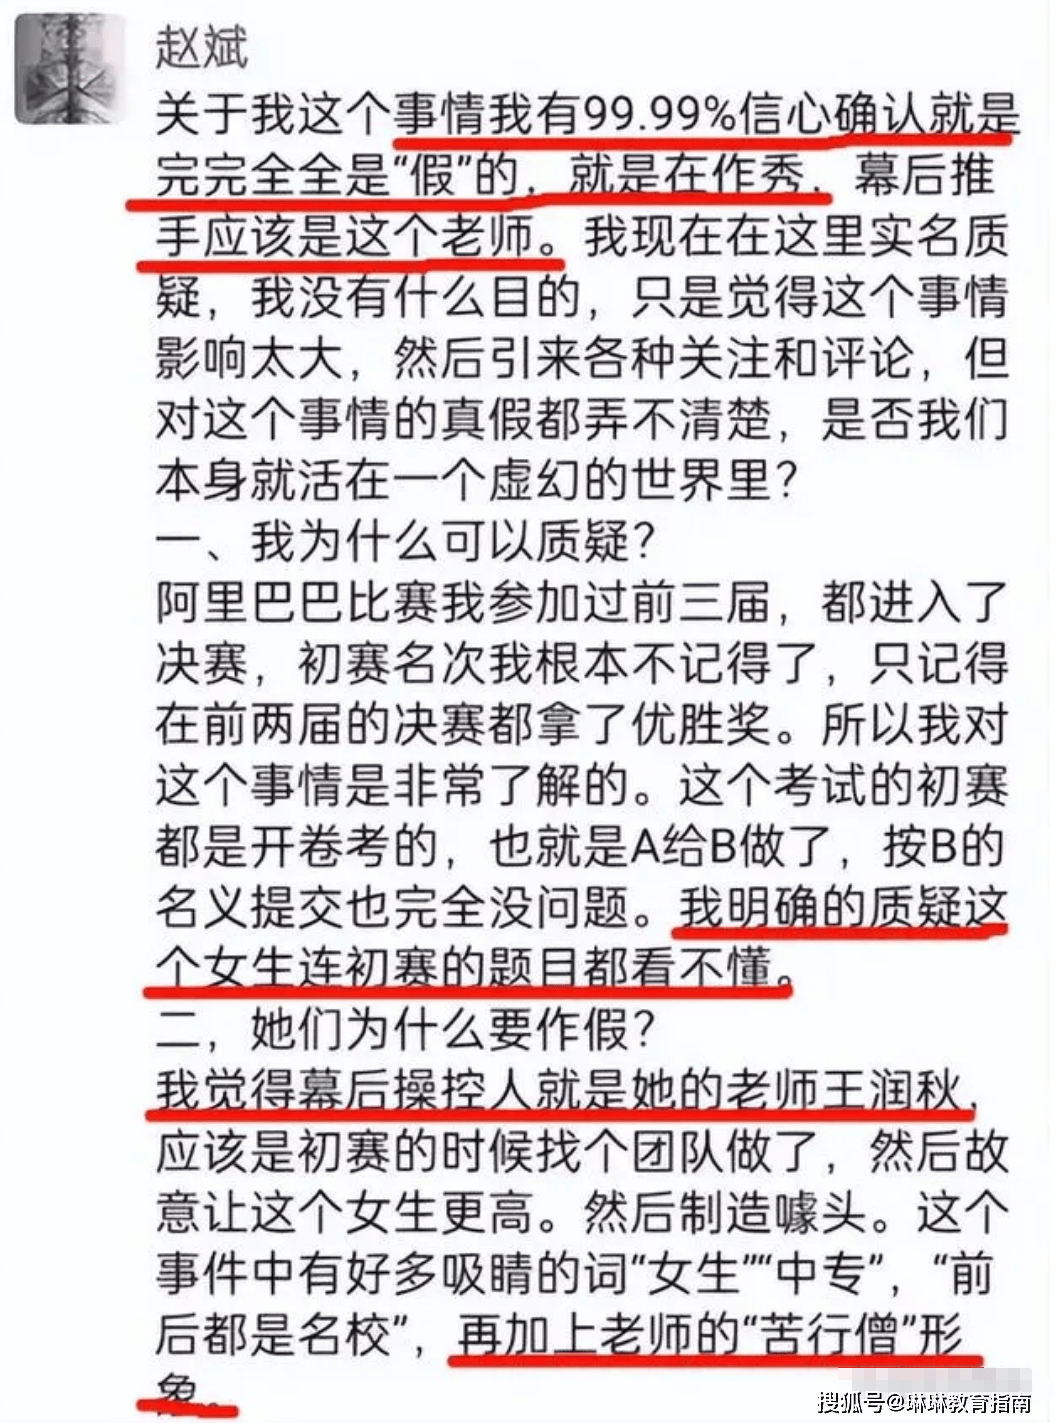 “姜萍连题目都看不懂”，北大硕士赵斌500万对赌，称愿承担后果